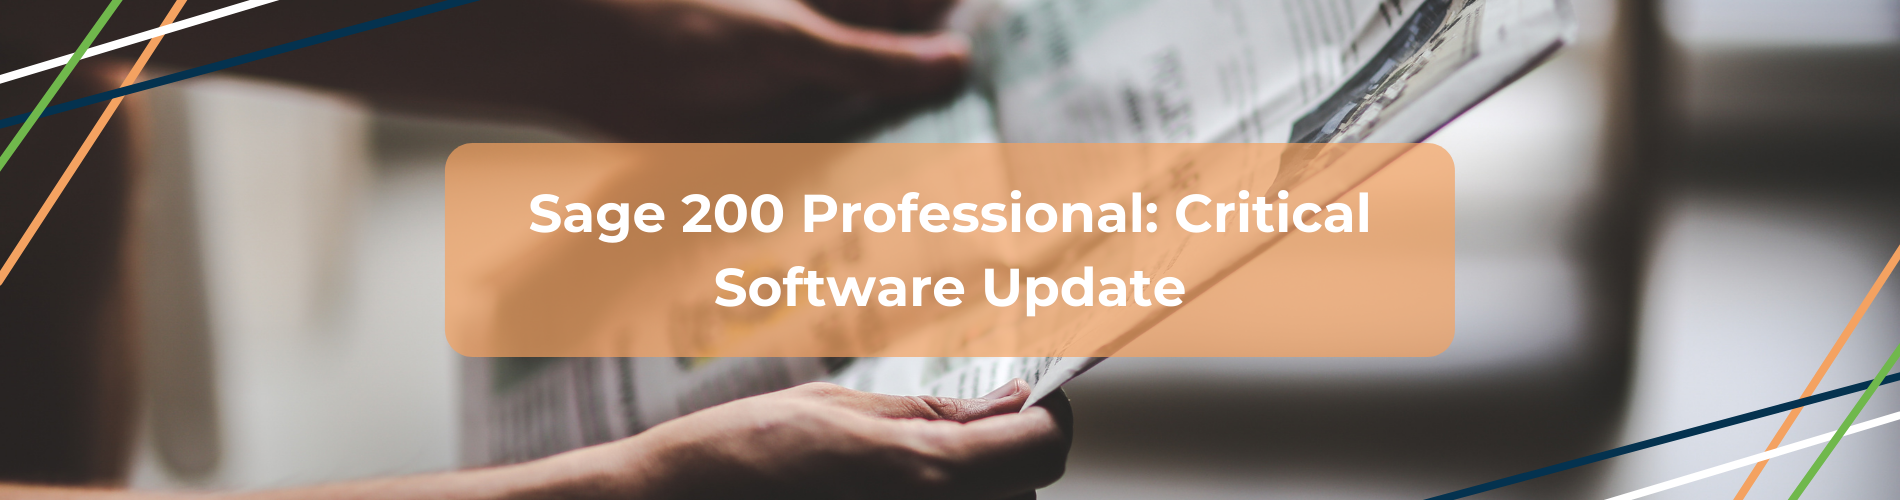 S200 Pro Critical software update header